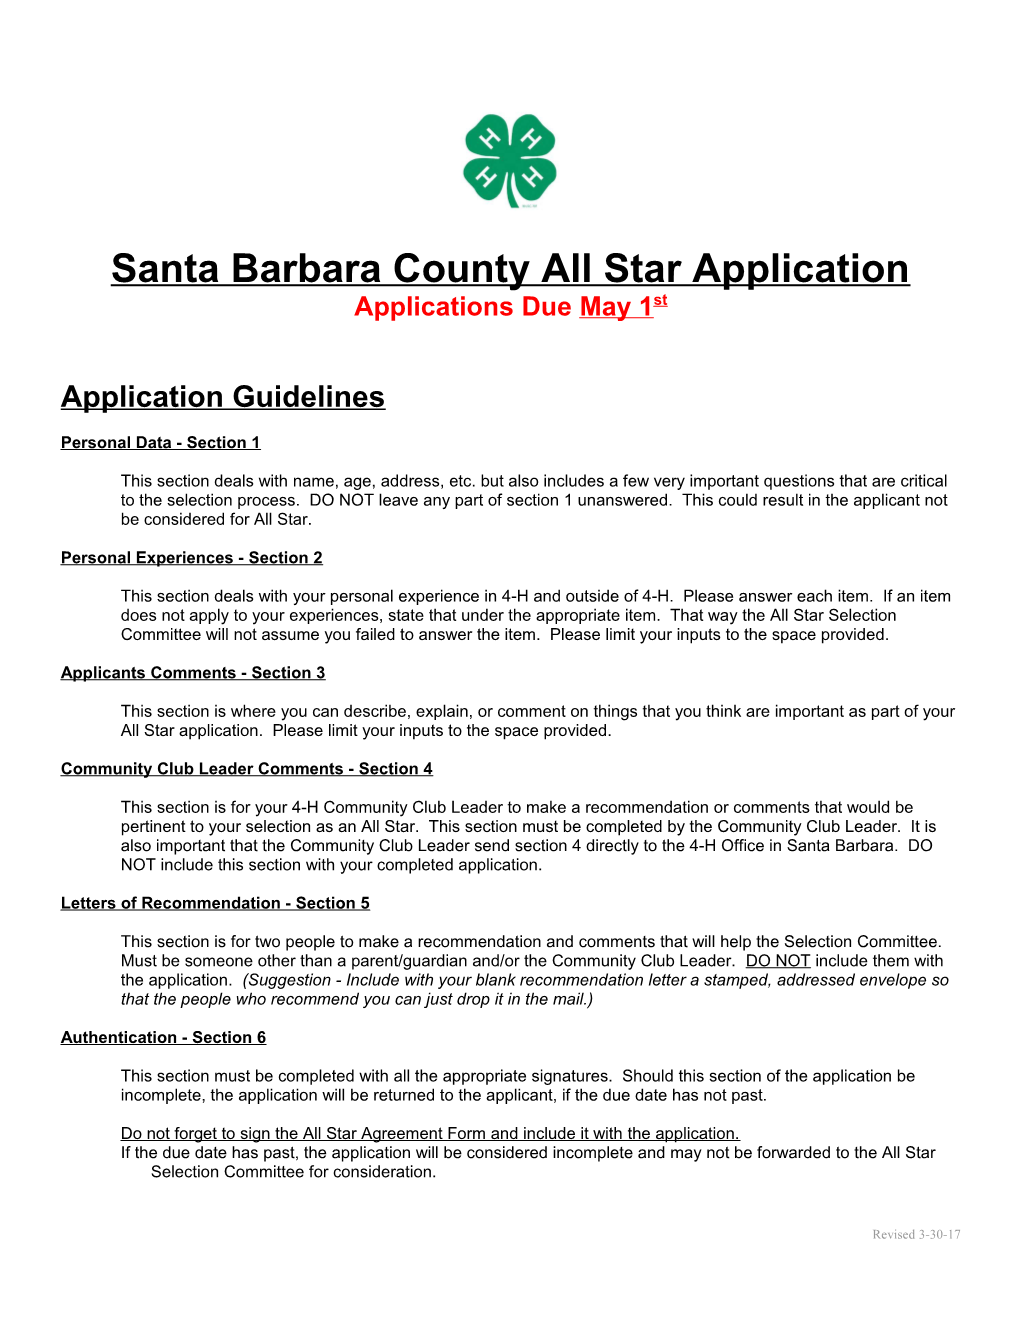 Santa Barbara County 4-H All Star Application